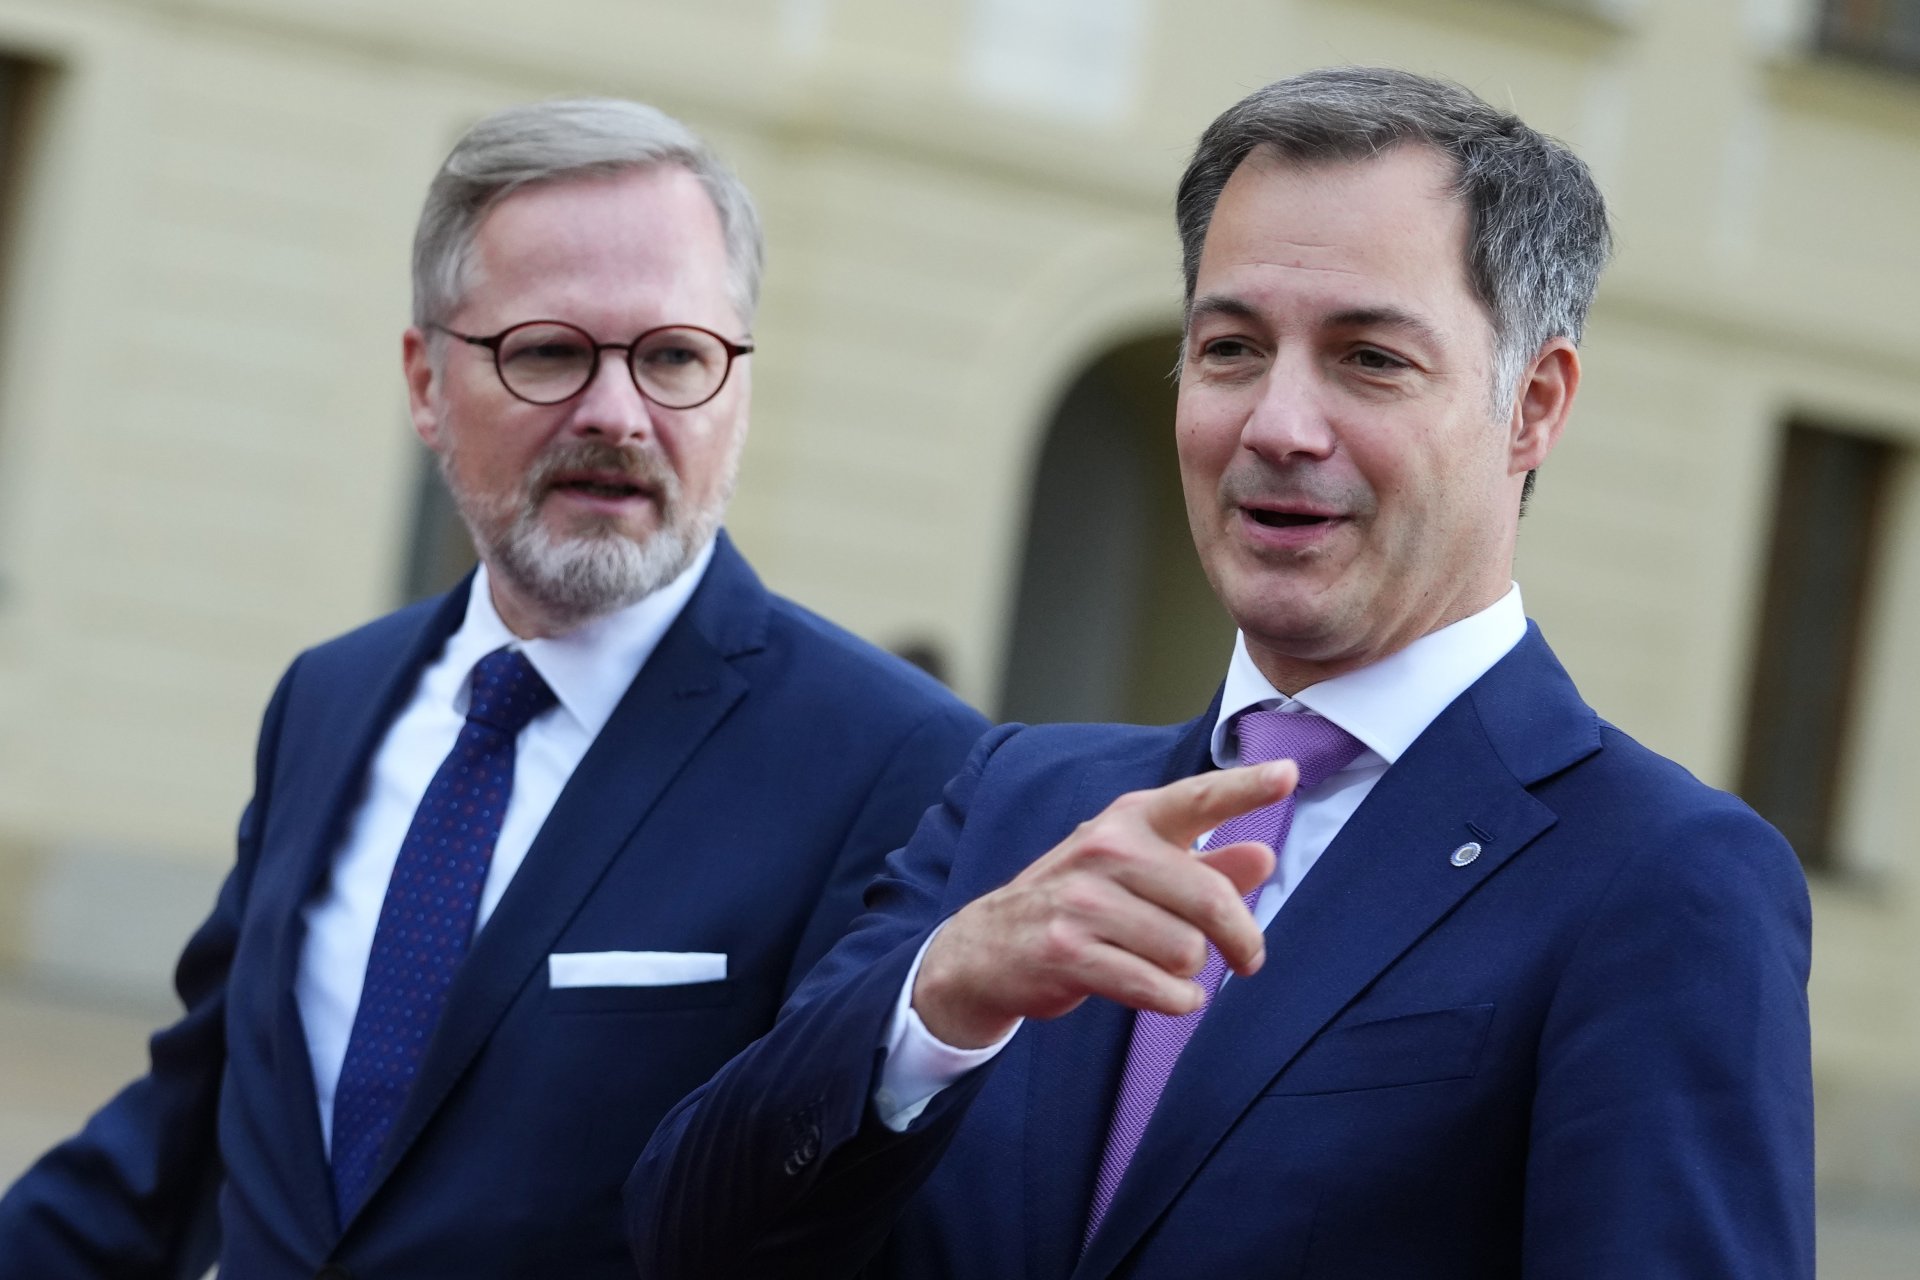 Премиерите на Чехия - Петър Фиала (вляво), и на Белгия - Алекдсандер де Кро